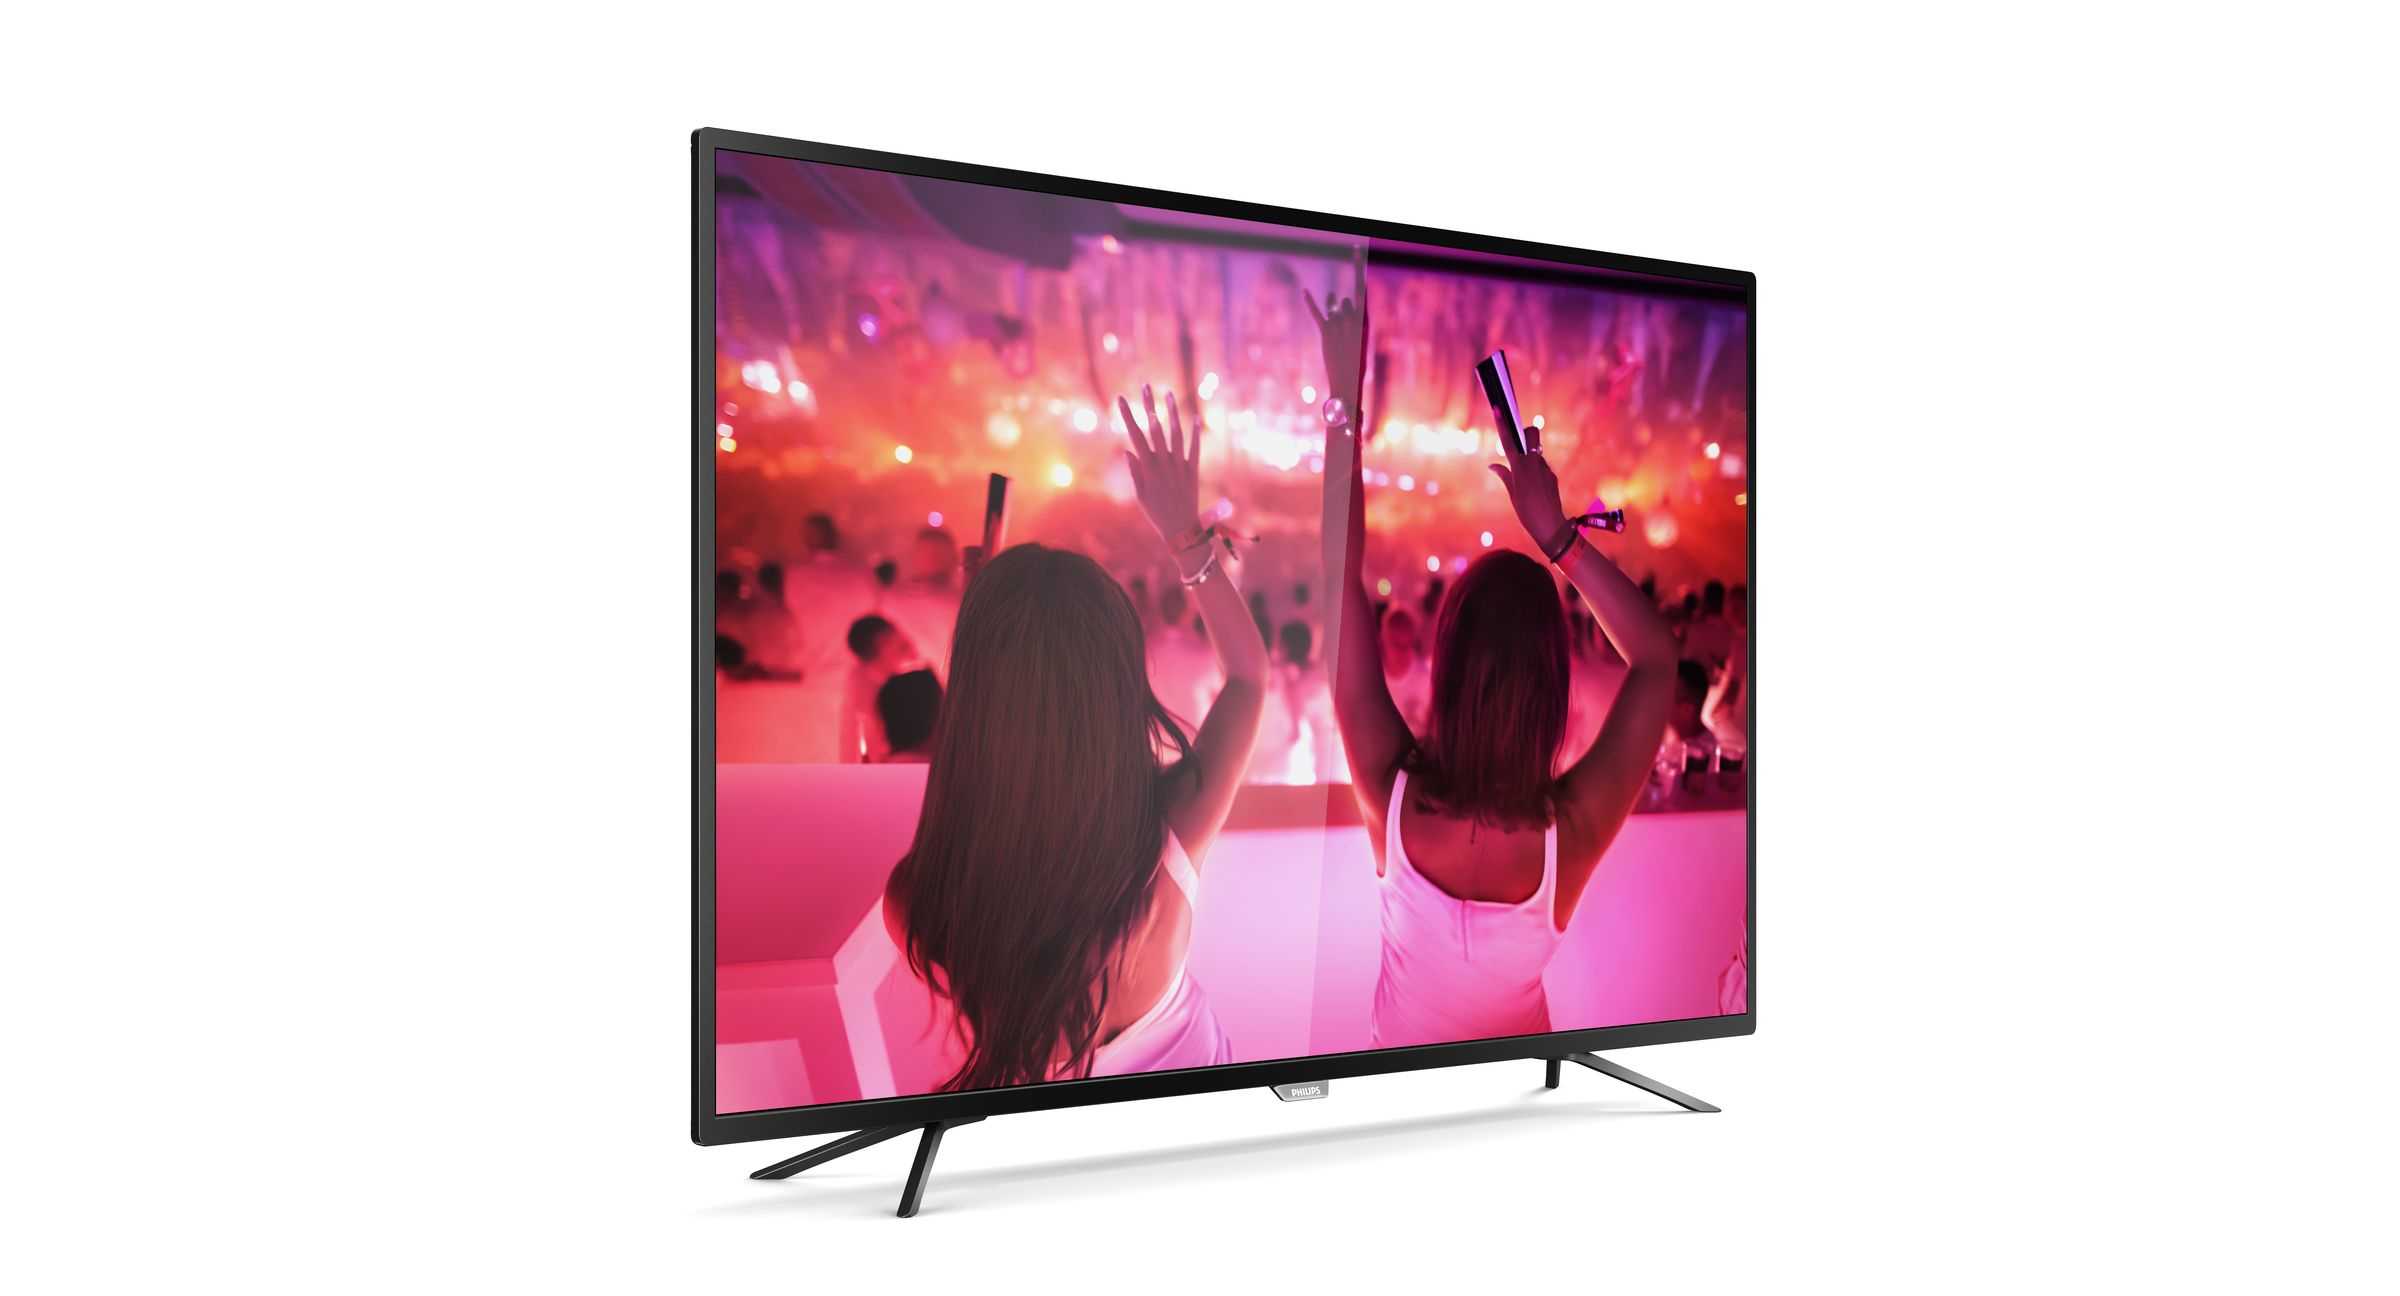 Телевизор Philips 40PFT4319 - подробные характеристики обзоры видео фото Цены в интернет-магазинах где можно купить телевизор Philips 40PFT4319